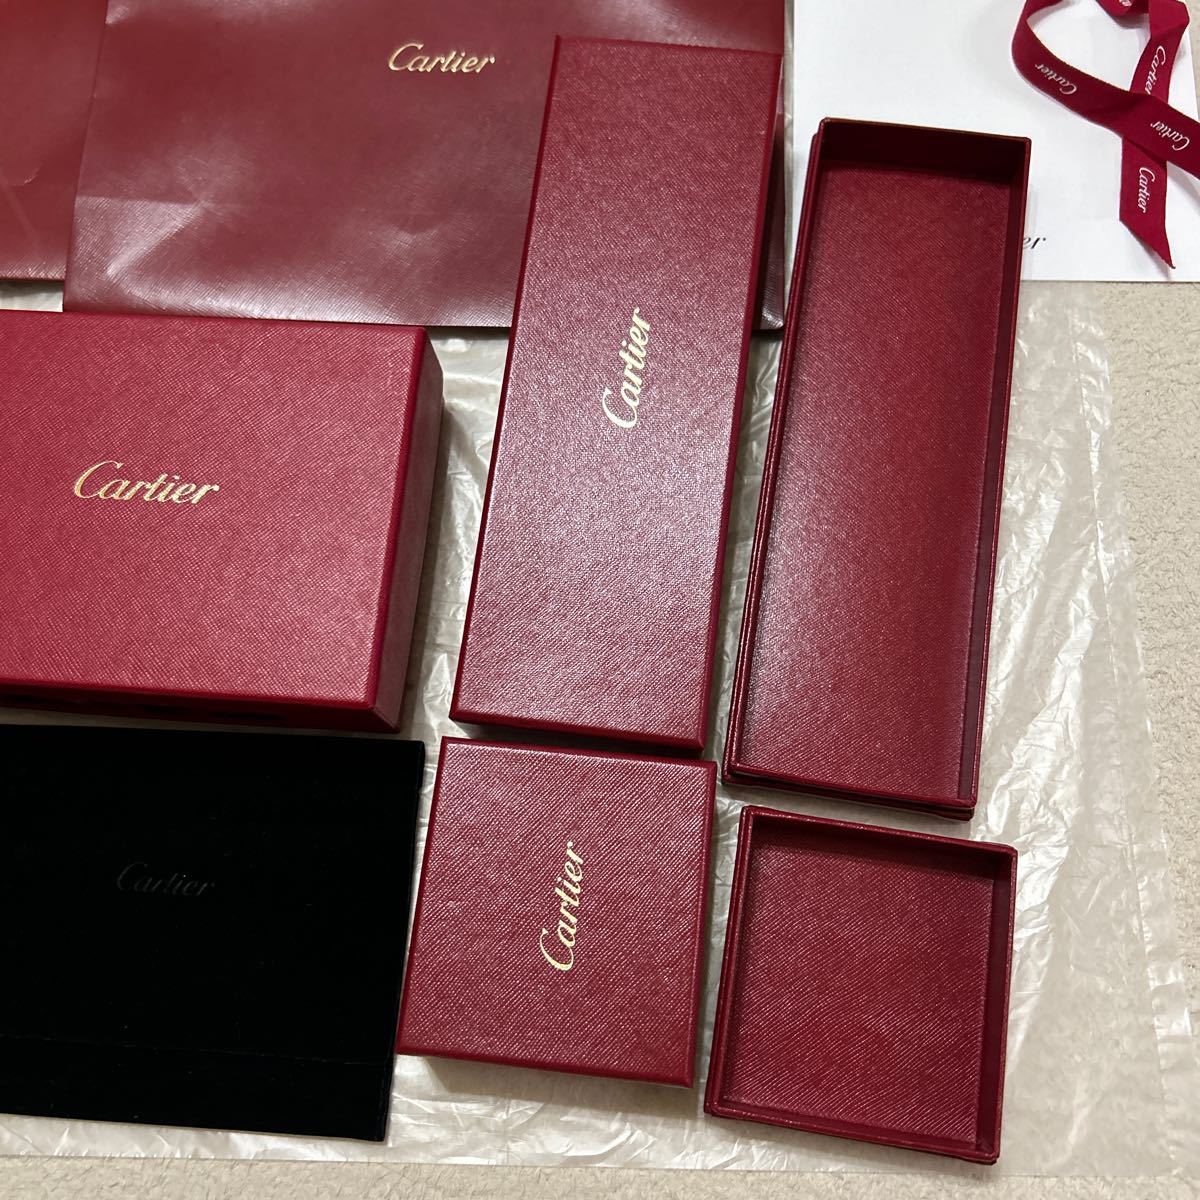 カルティエ 空箱 保存袋 紙袋 セット Cartier BOX 空き箱 箱 ショップ袋 時計 アクセサリー 革小物 ショッパーの画像4